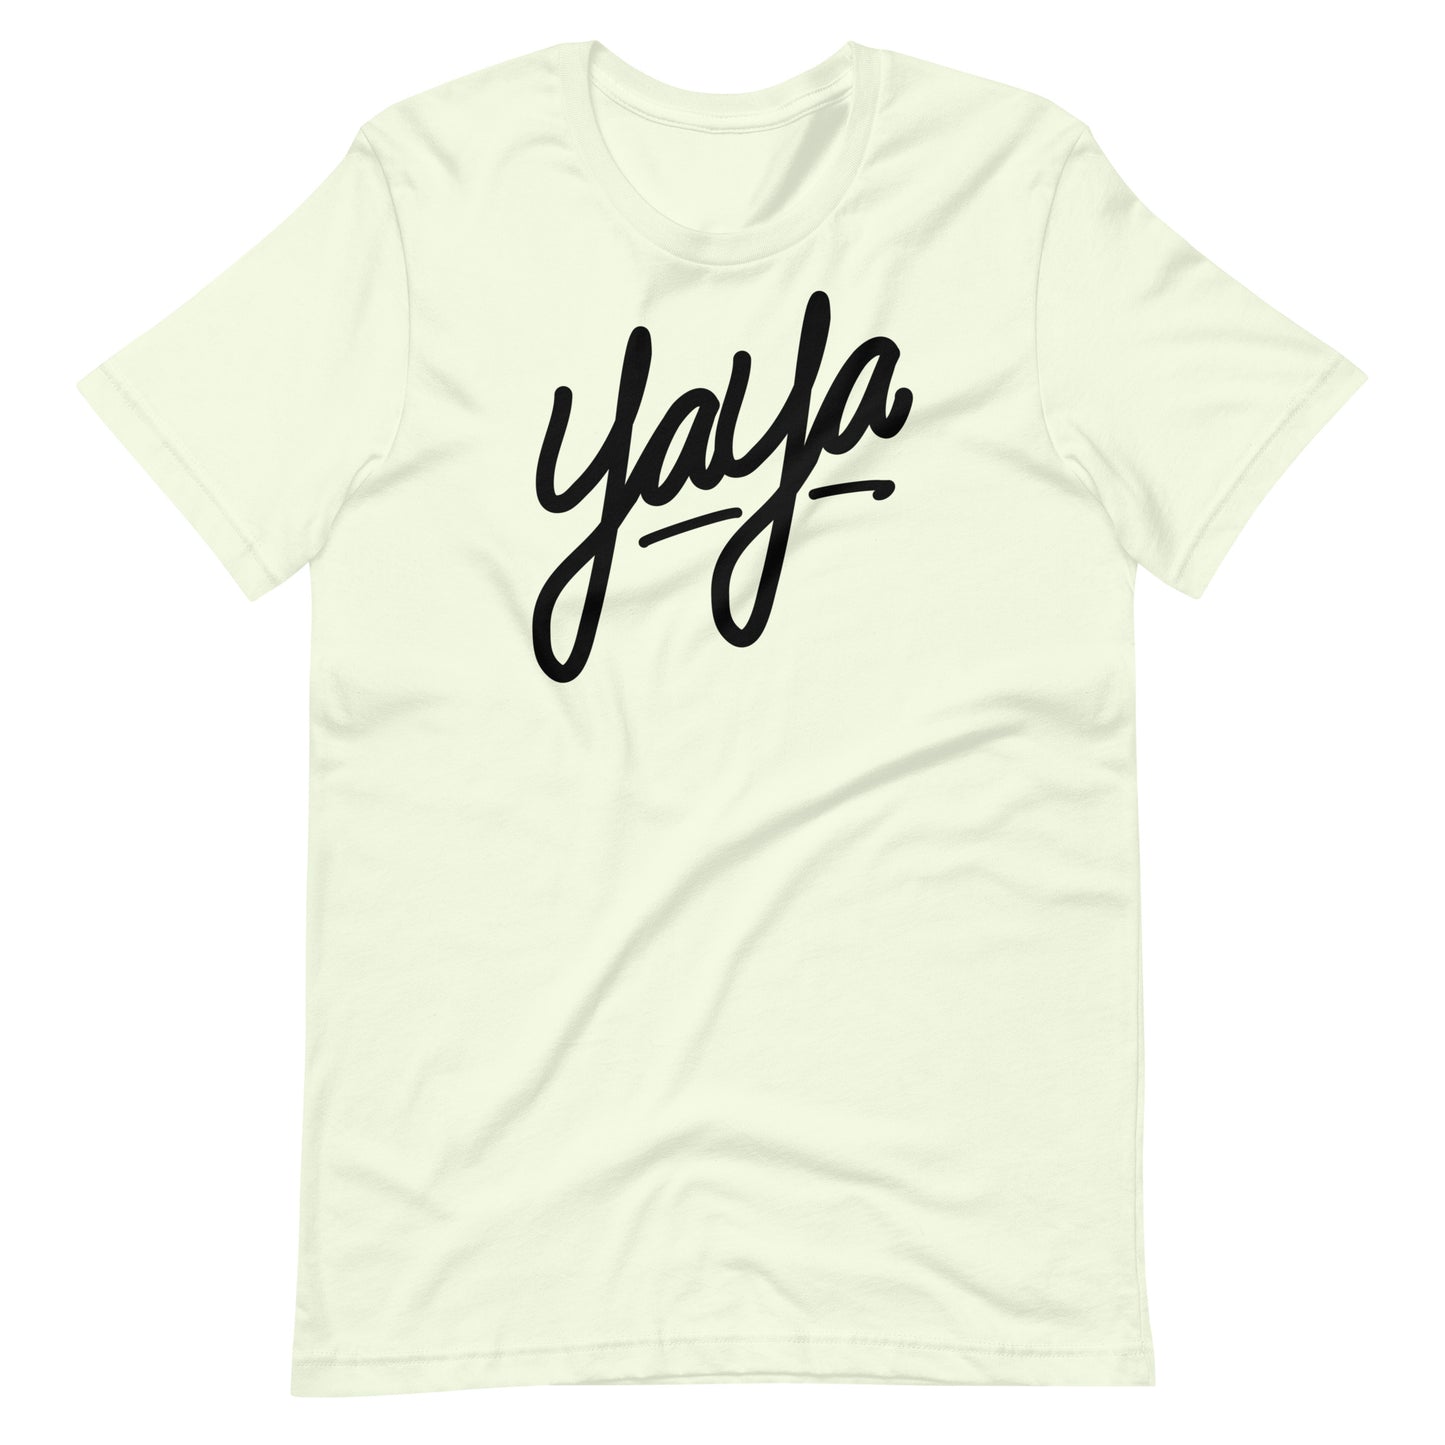 Yaya T-shirt (Black)